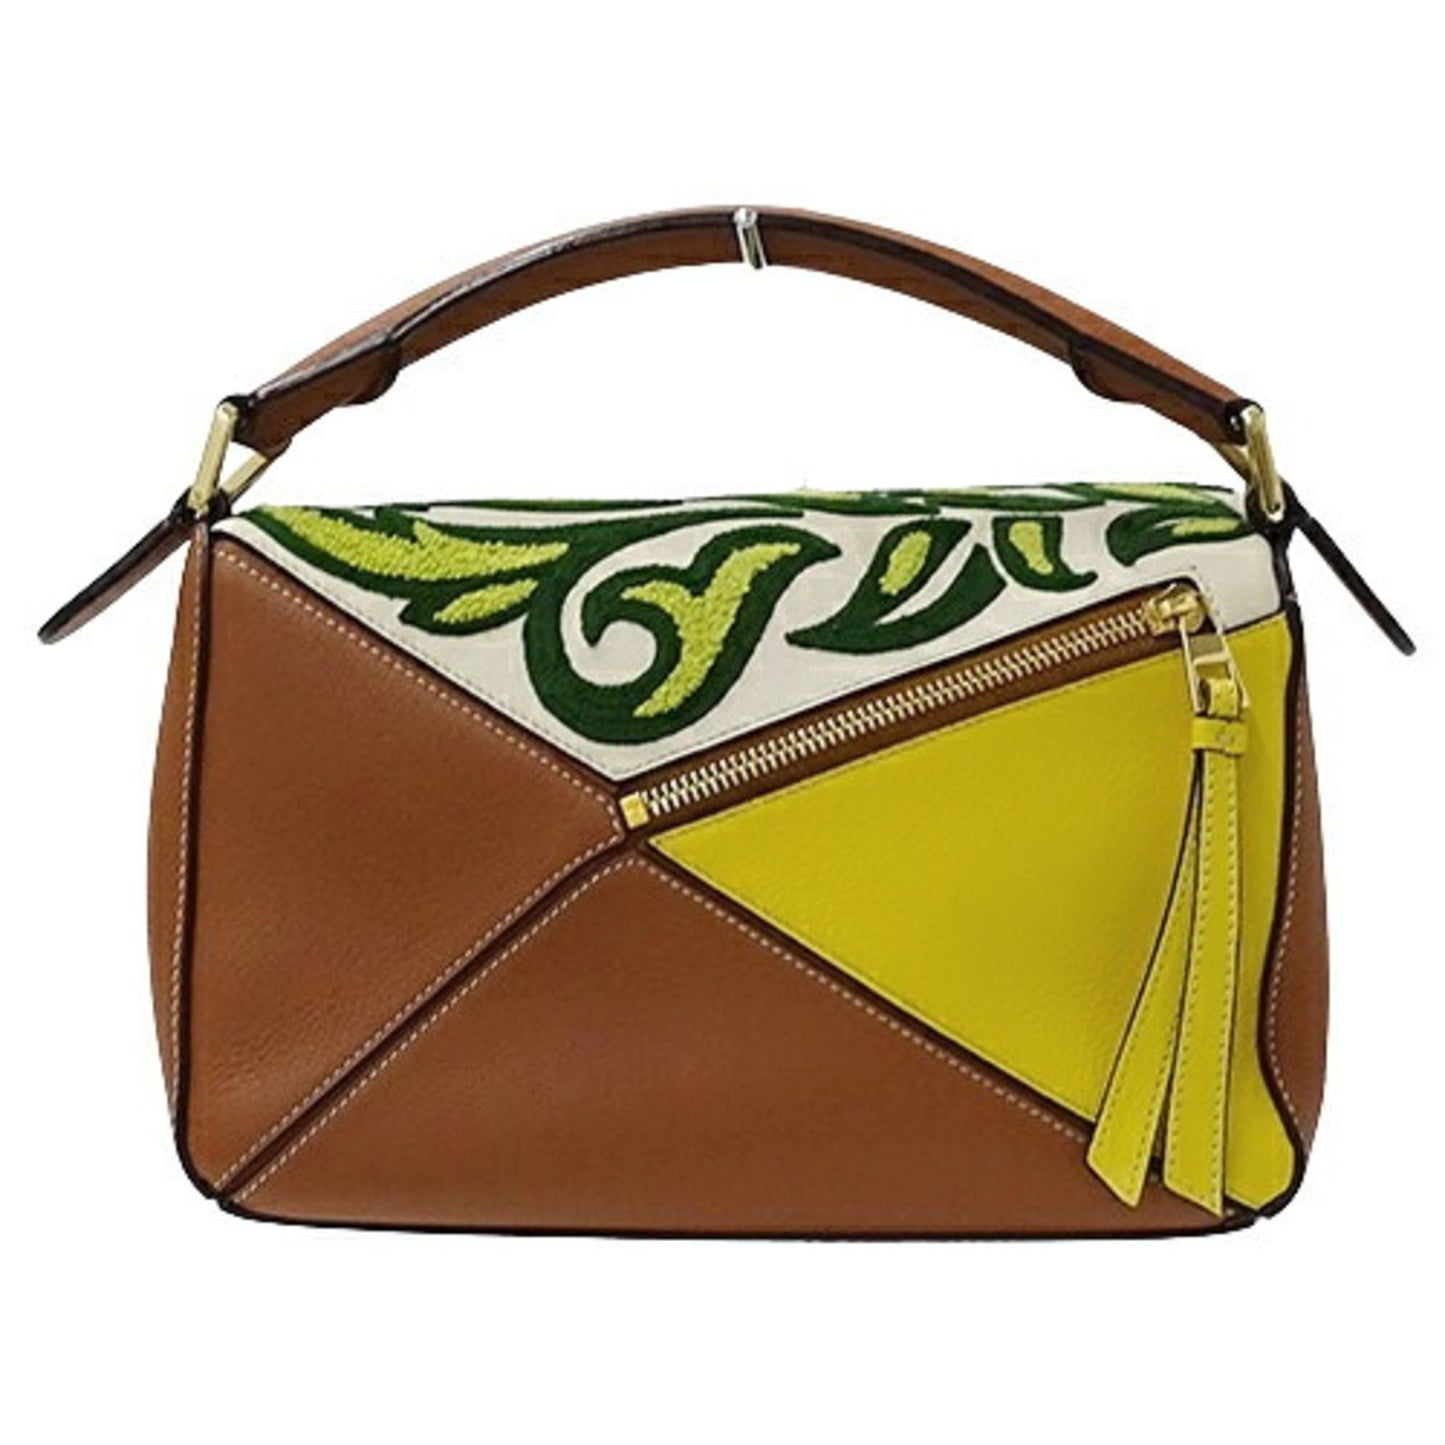 Loewe Women's Versatile Leather Handbag with Unique Design in Brown